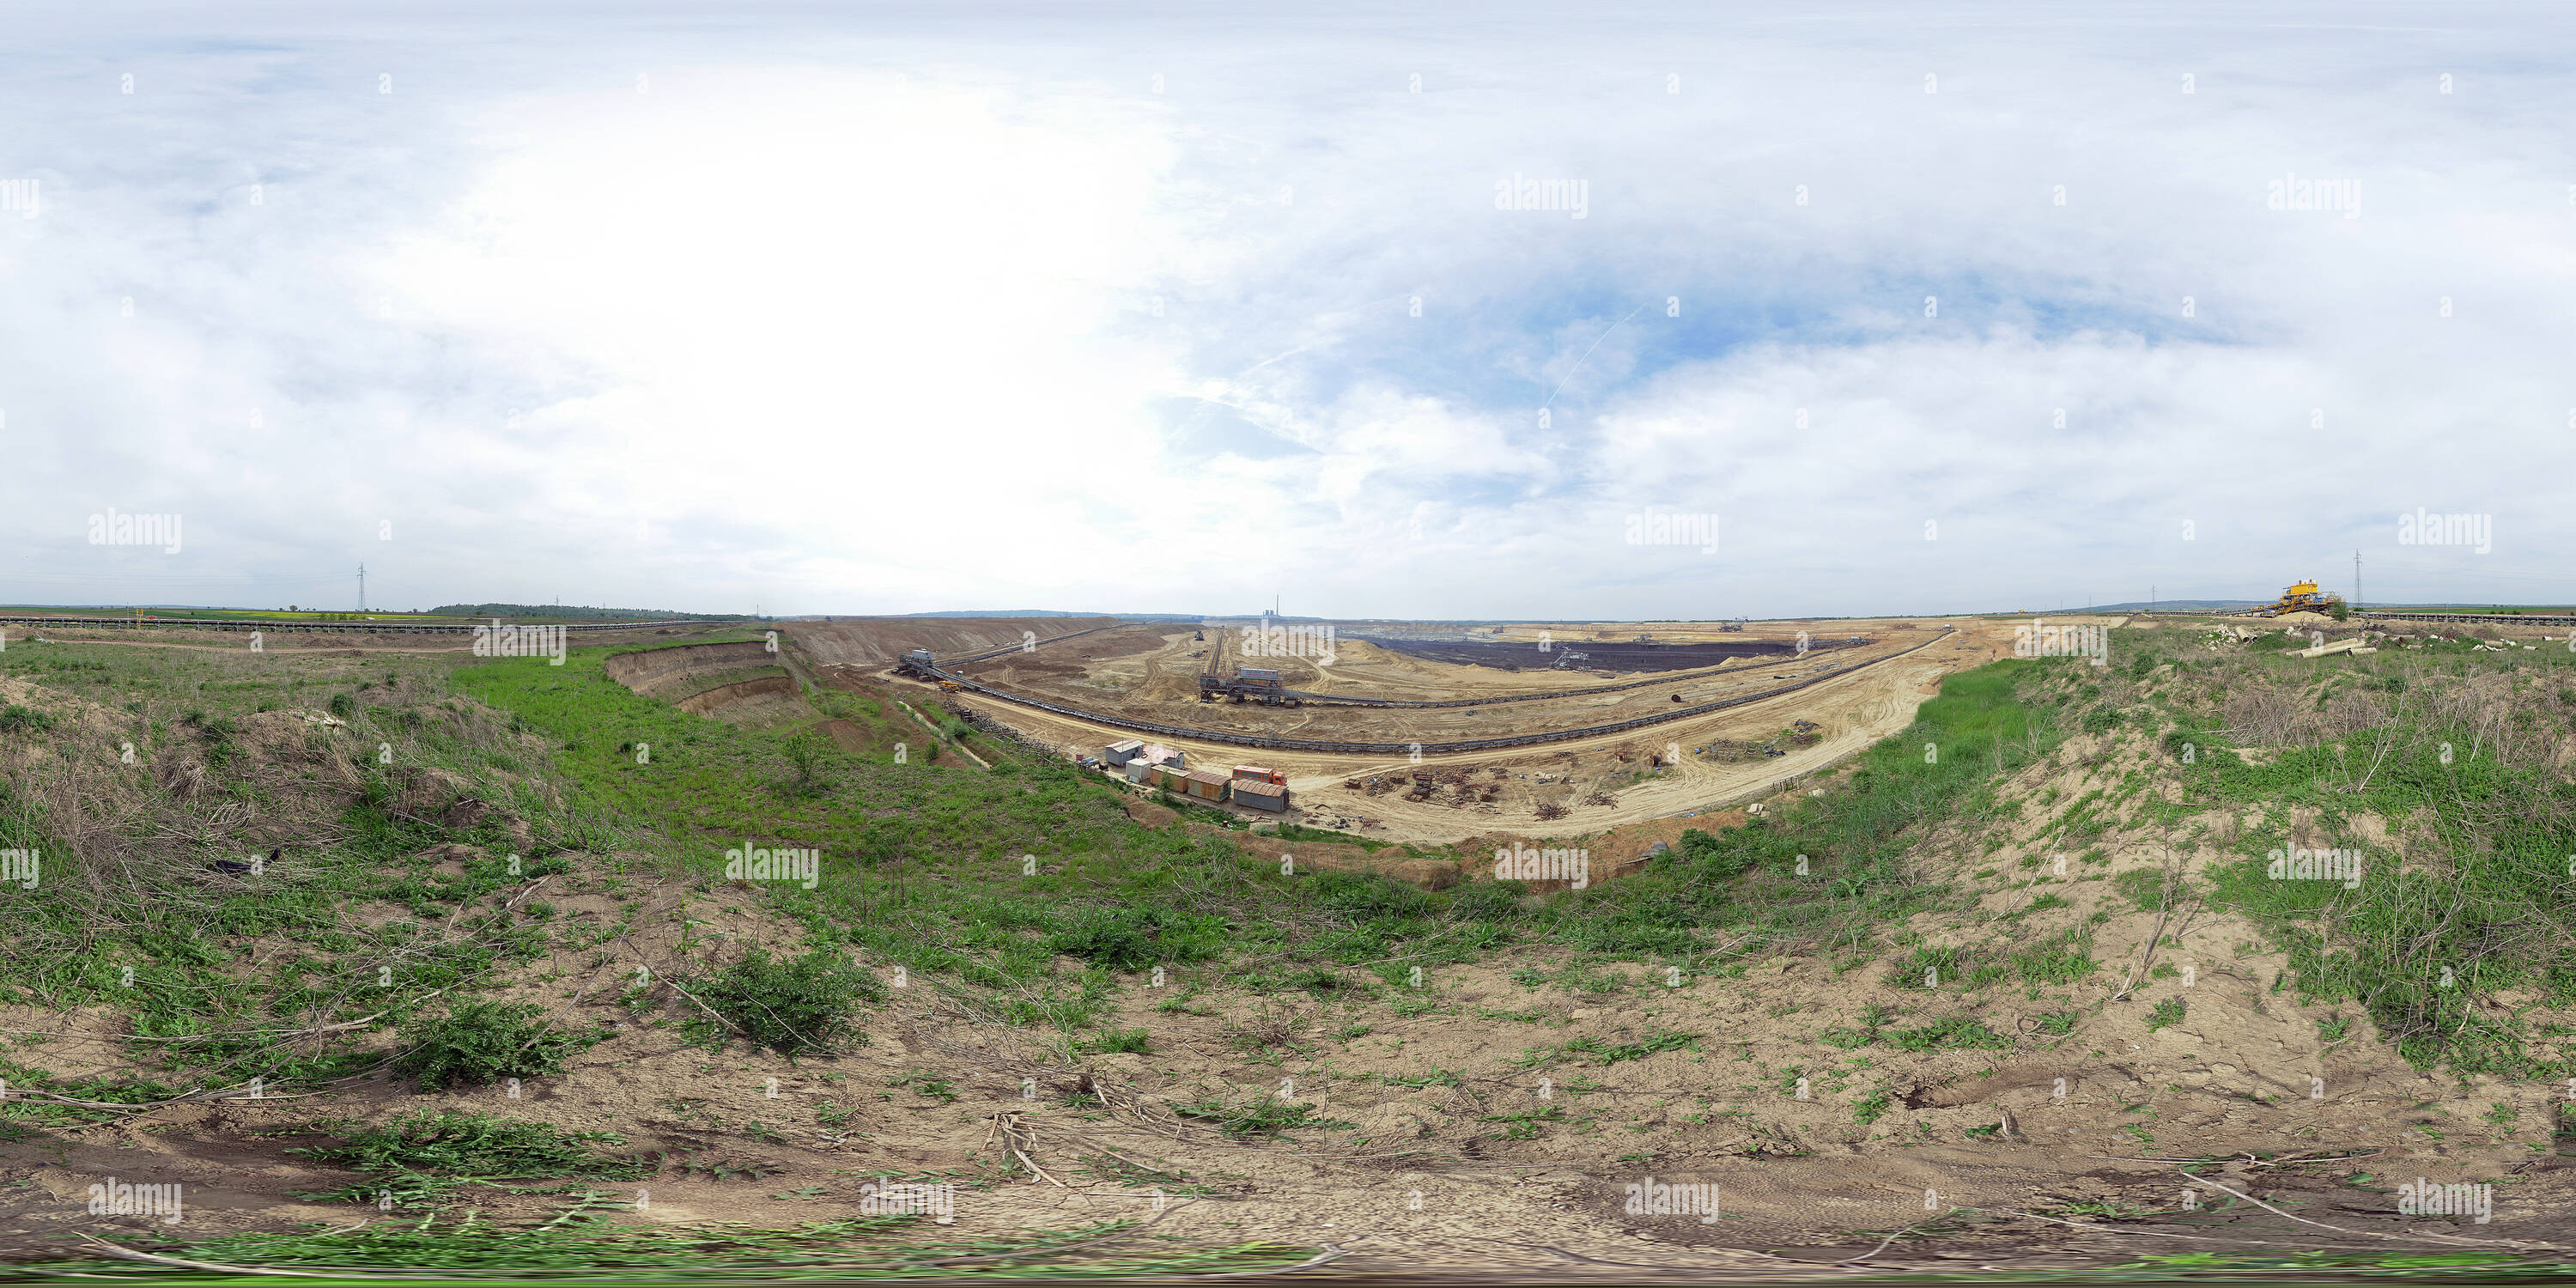 360 degree panoramic view of Drmno mining